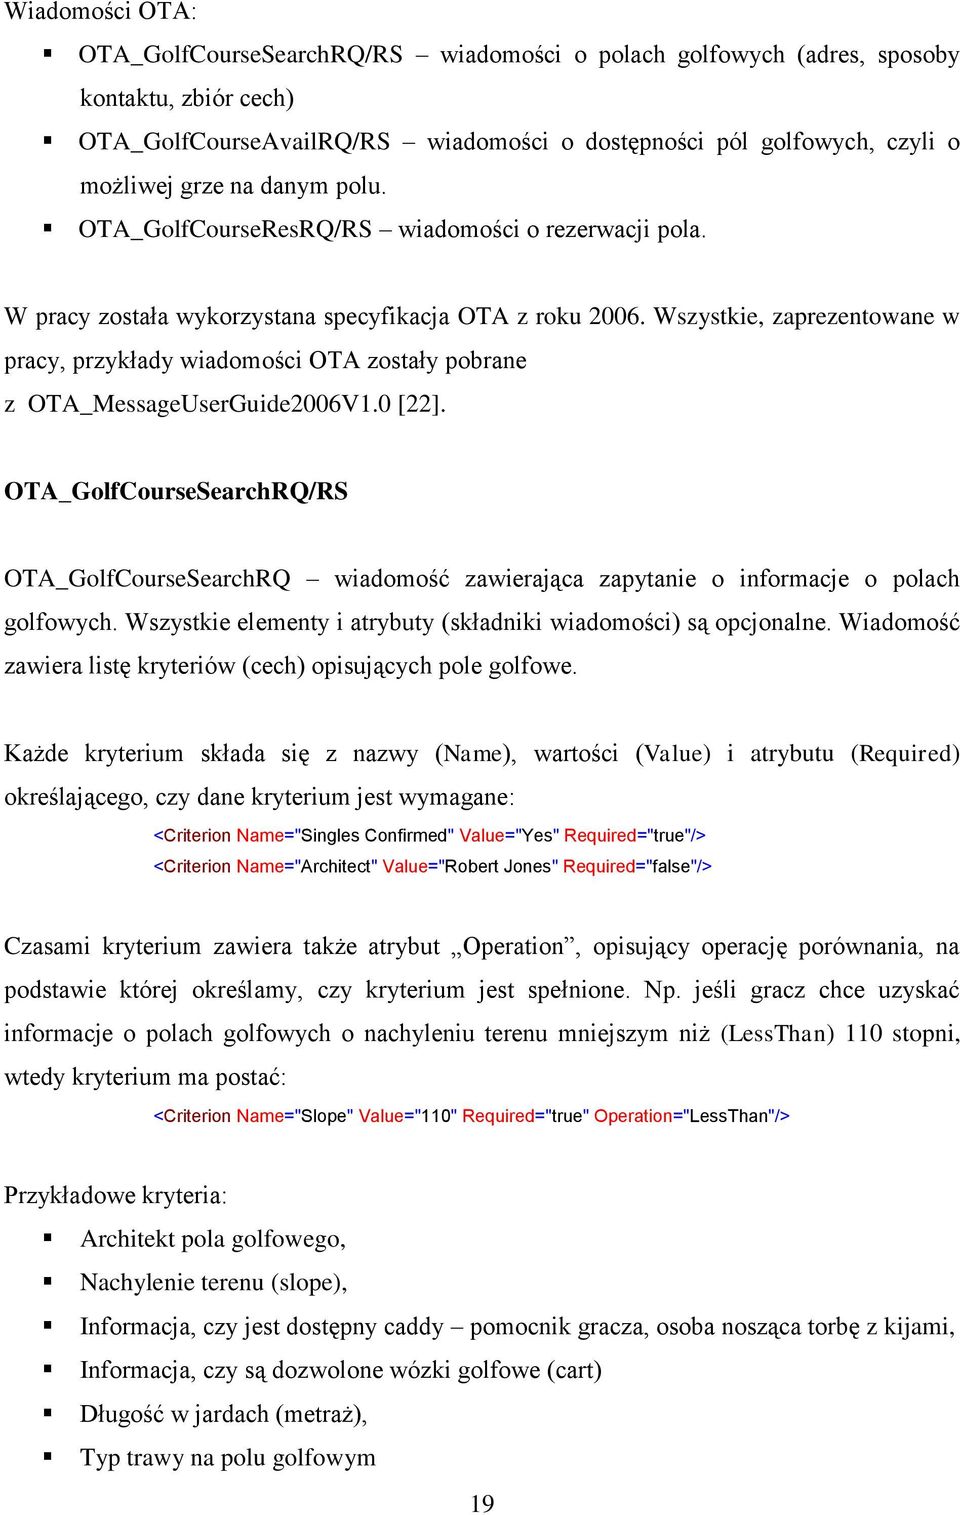 Wszystkie, zaprezentowane w pracy, przykłady wiadomości OTA zostały pobrane z OTA_MessageUserGuide2006V1.0 [22].